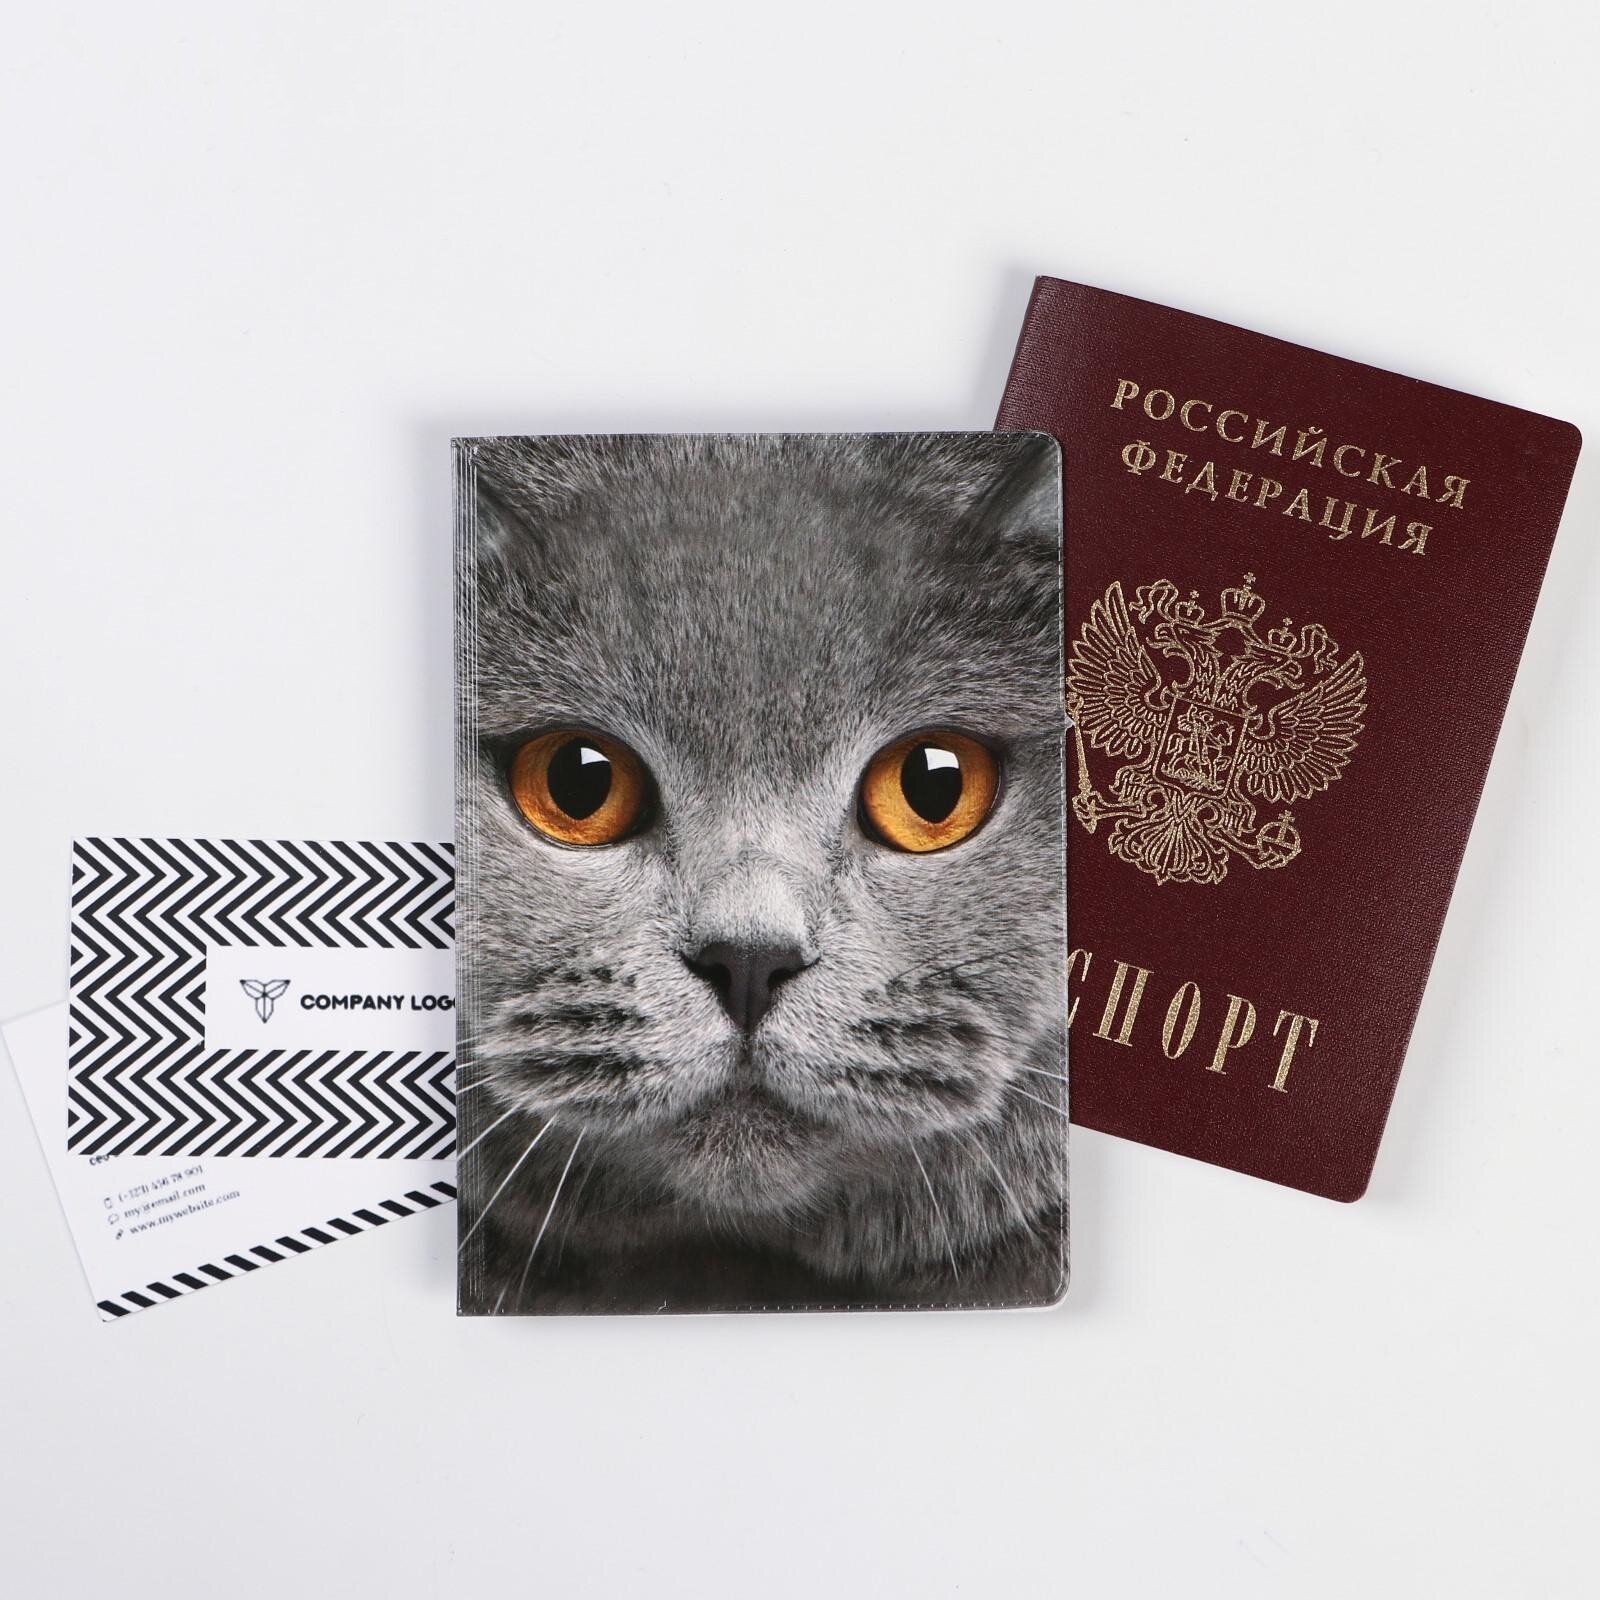 Обложка для паспорта Сима-ленд Обложка на паспорт